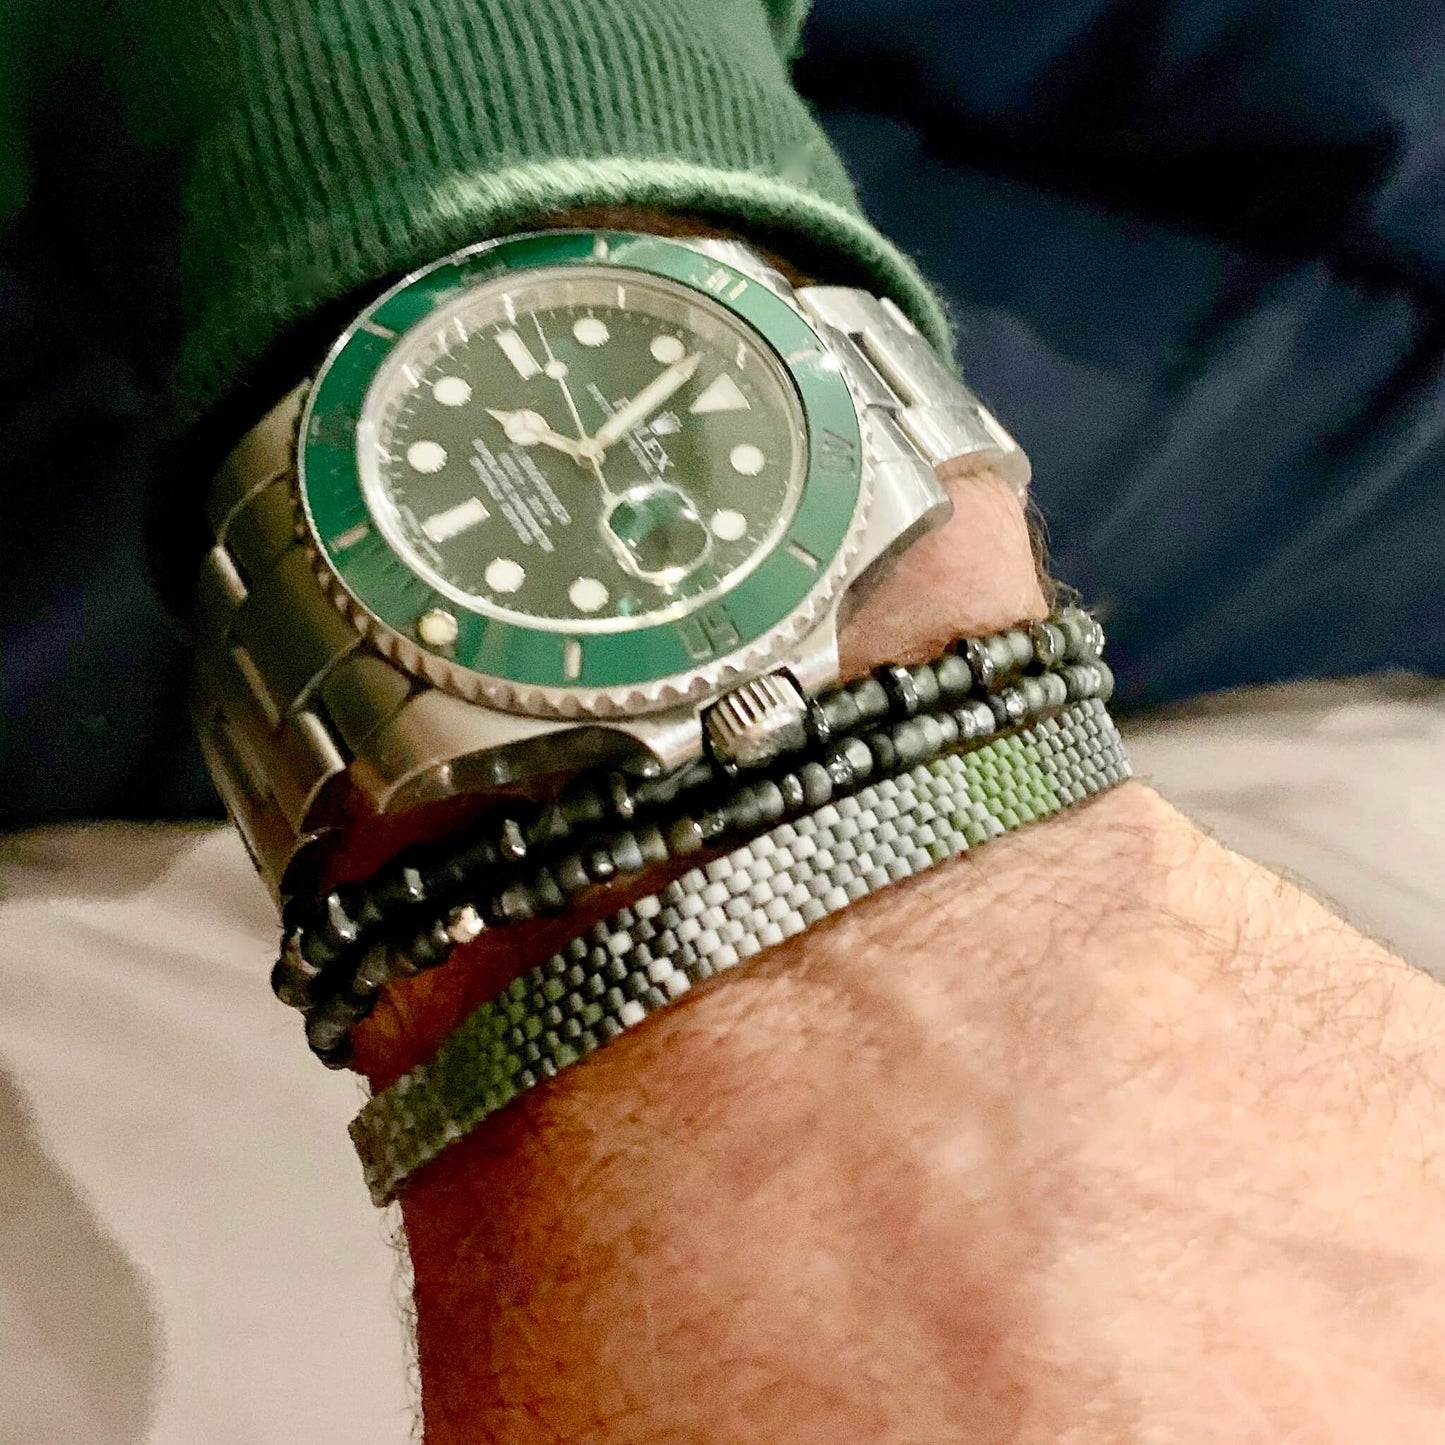 Ombre Bracelet | Mens Beaded Bracelet | Green/Gray